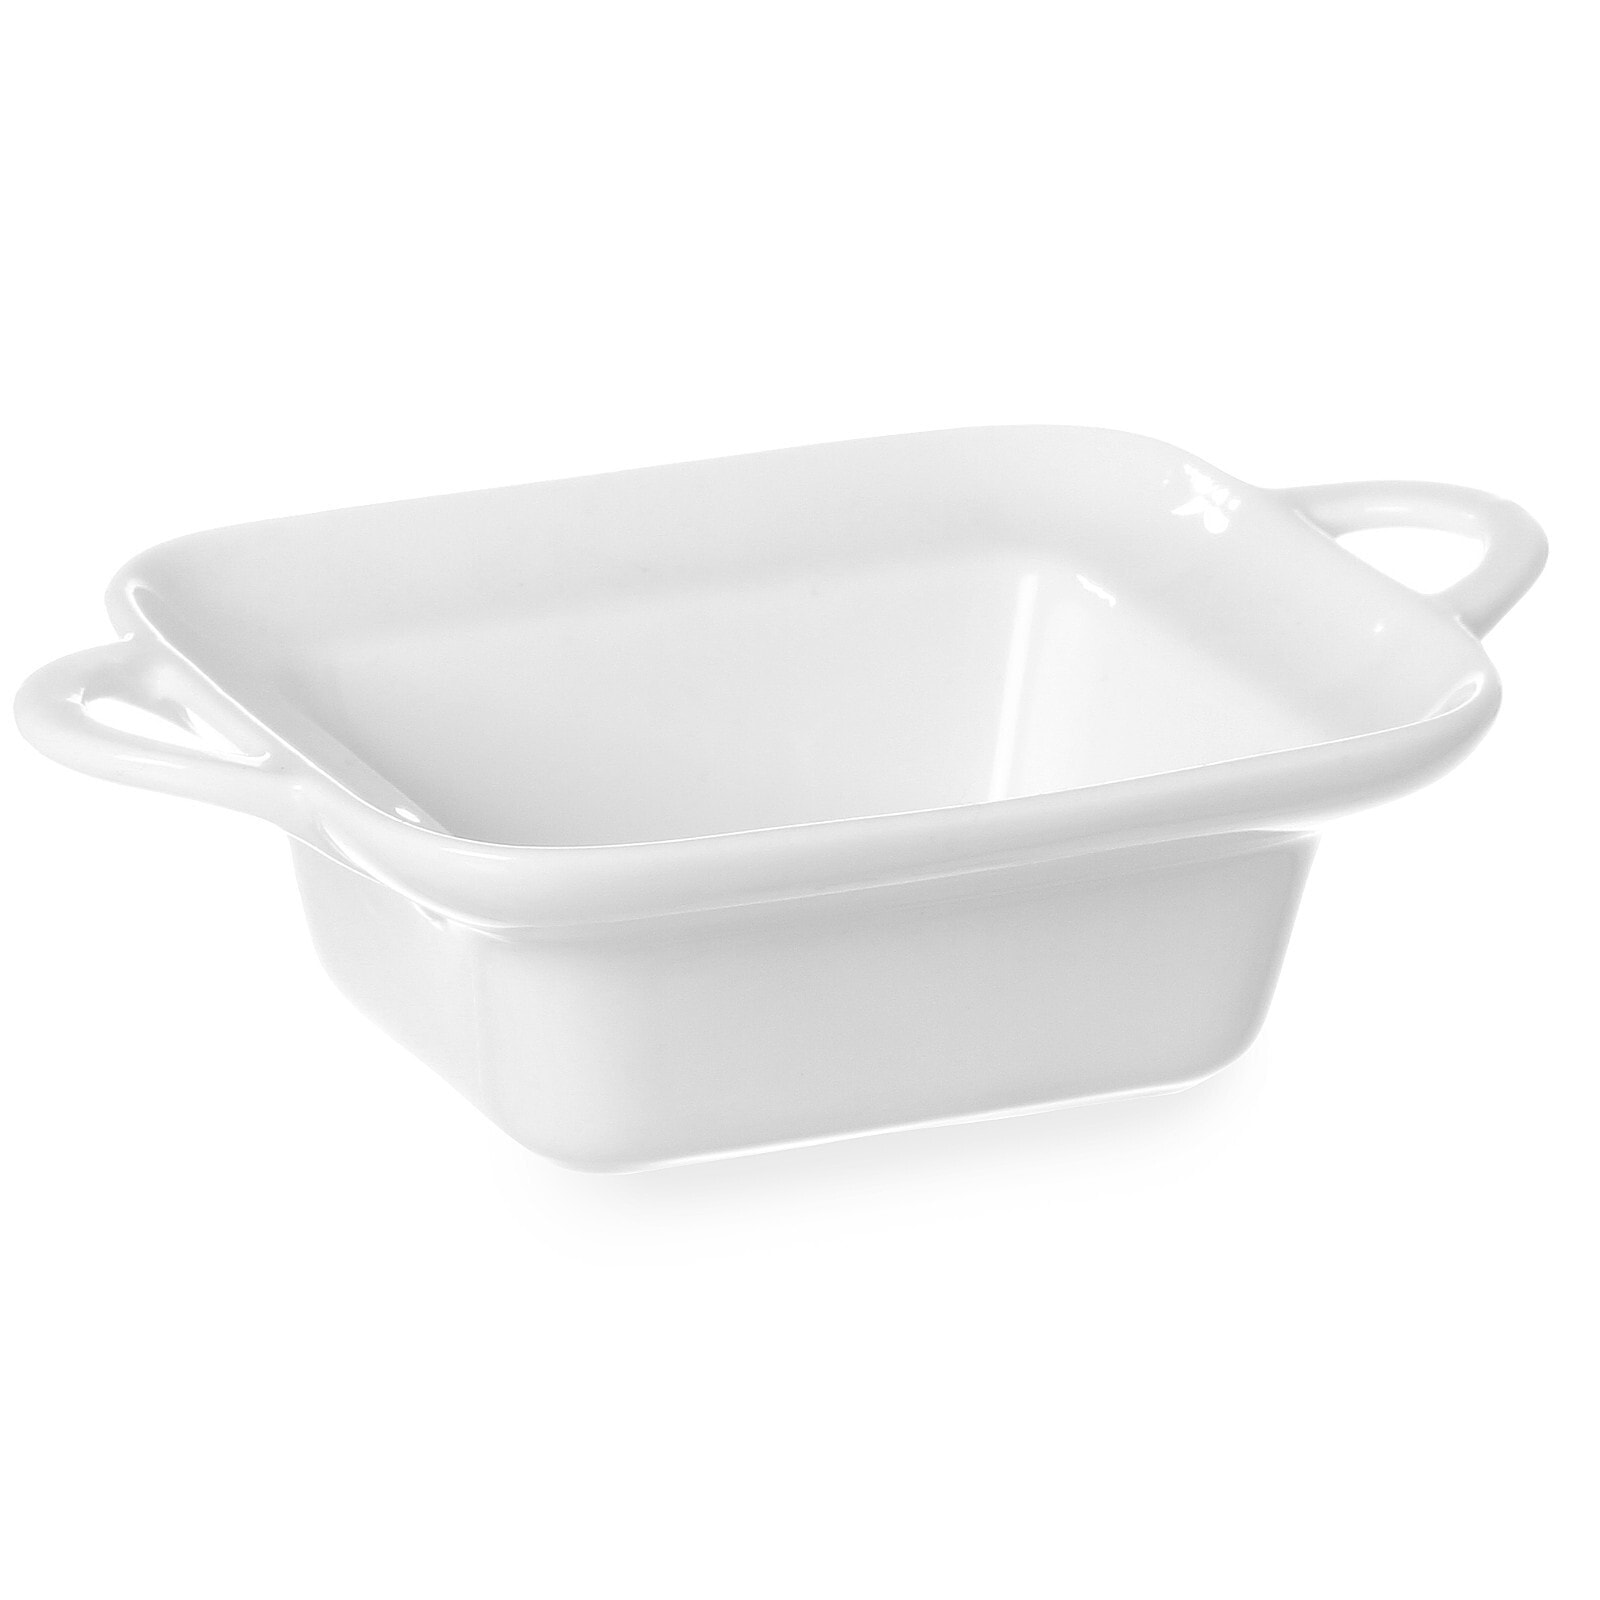 Baking platter rectangular with handles 100x140x45mm white porcelain - Hendi 784105